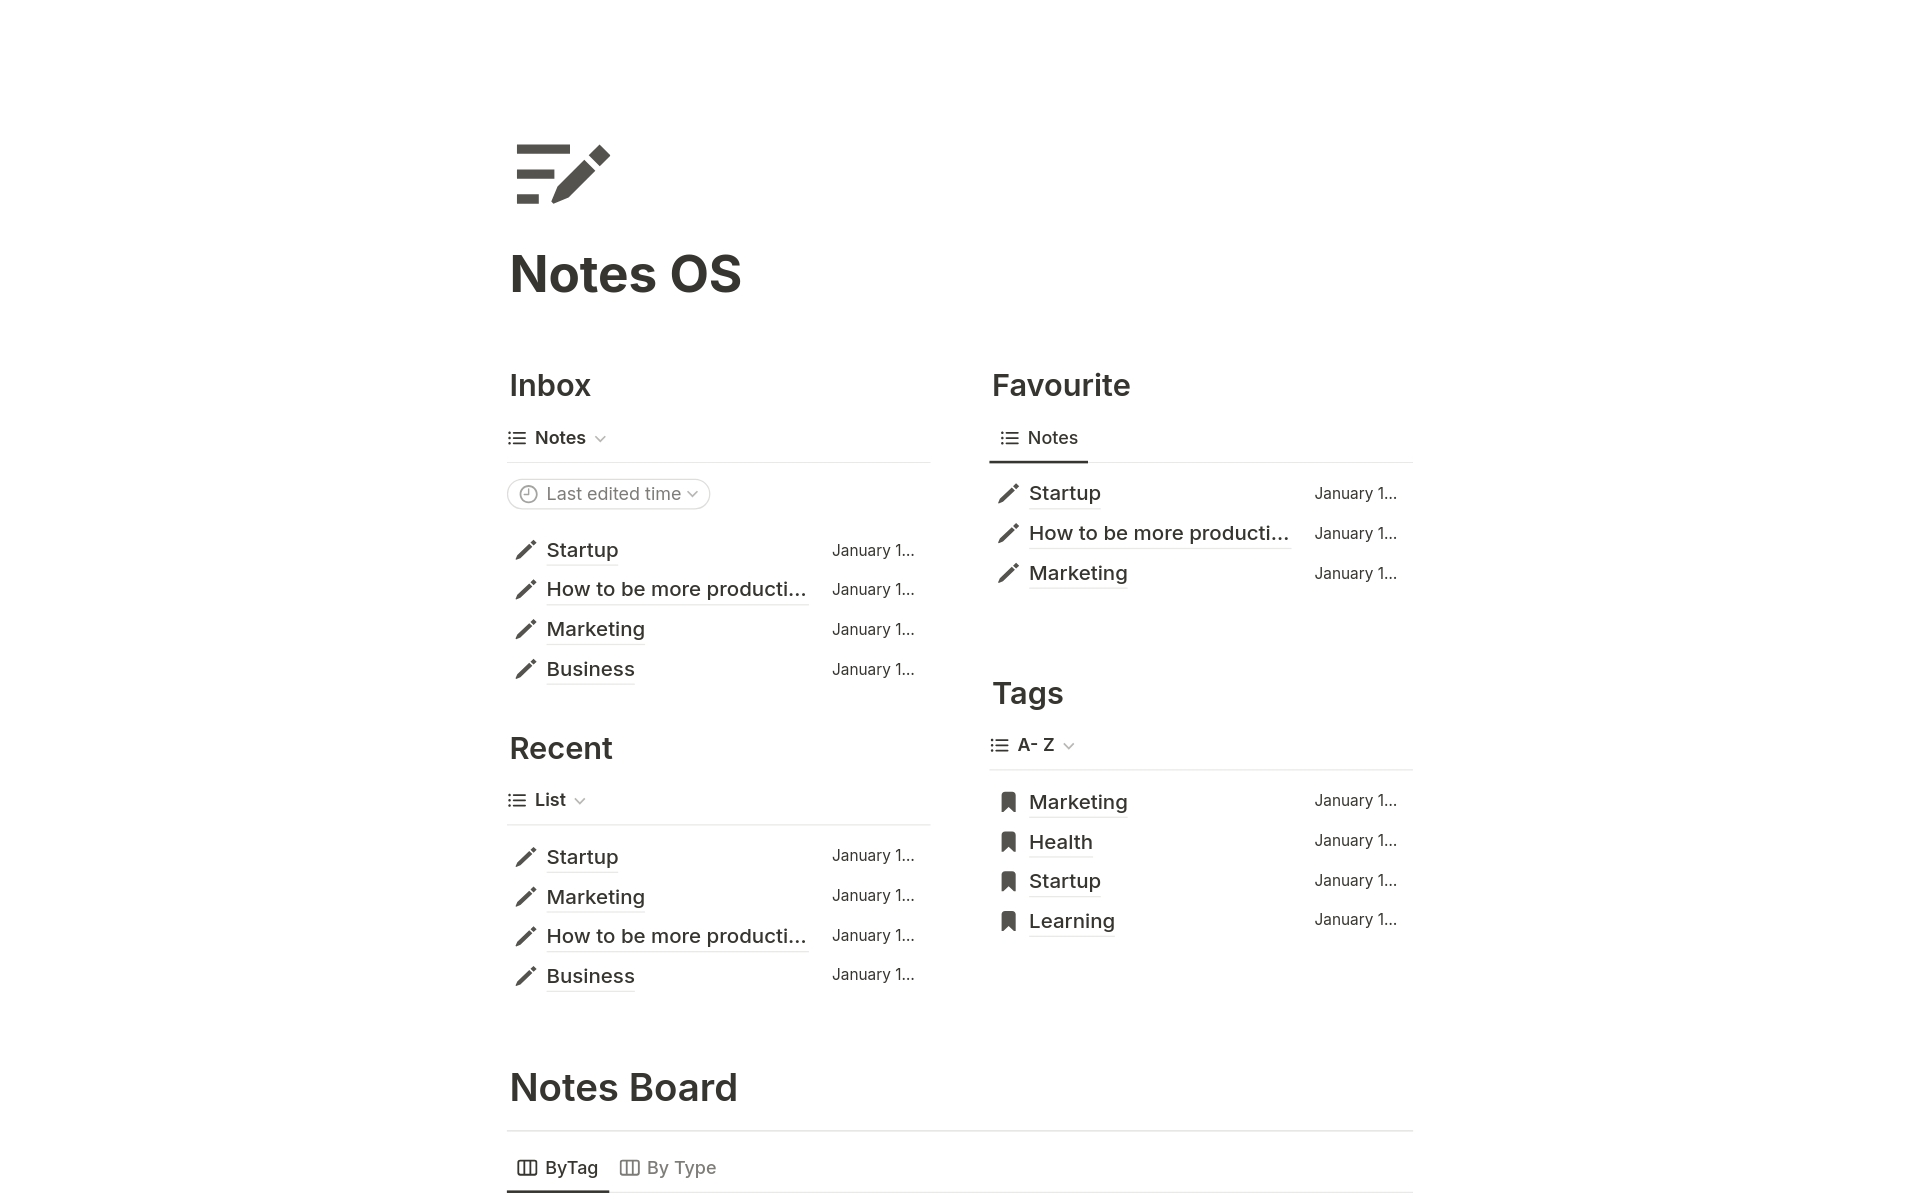 Vista previa de una plantilla para Ultimate Notes OS 